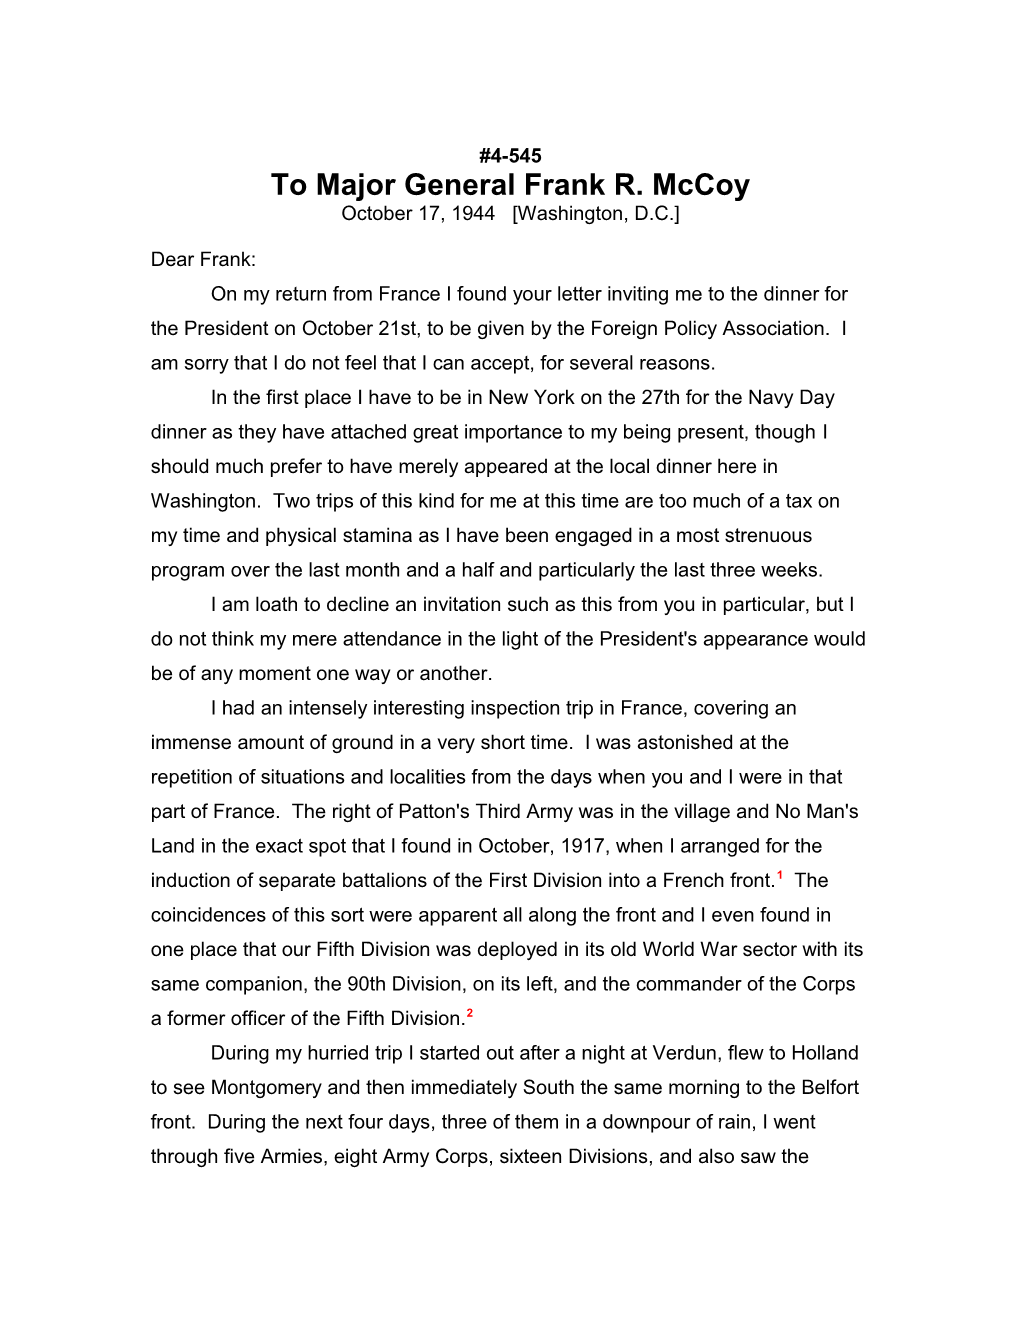 To Major General Frank R. Mccoy